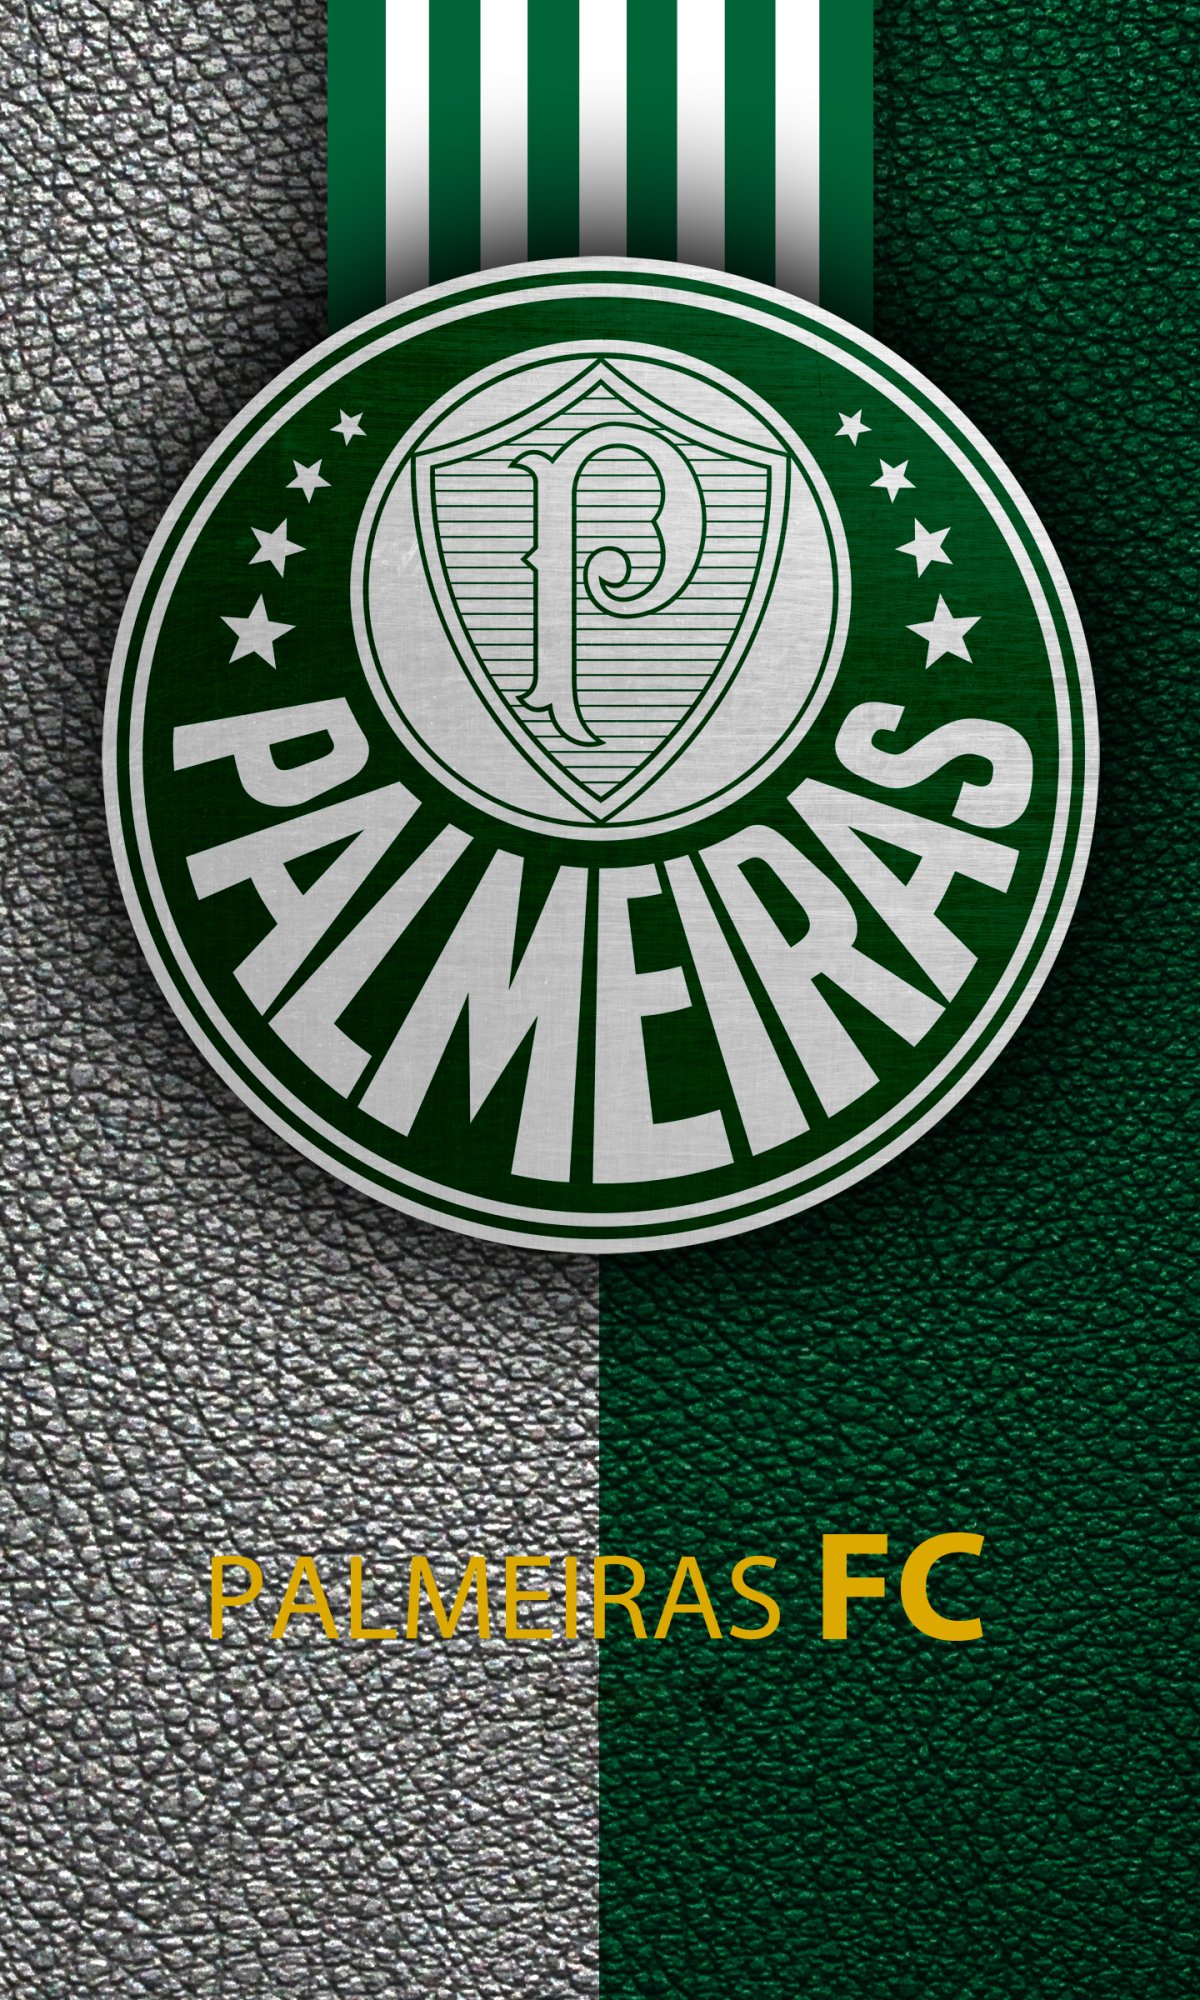 Descarga gratuita de fondo de pantalla para móvil de Fútbol, Logo, Deporte, Sociedade Esportiva Palmeiras.